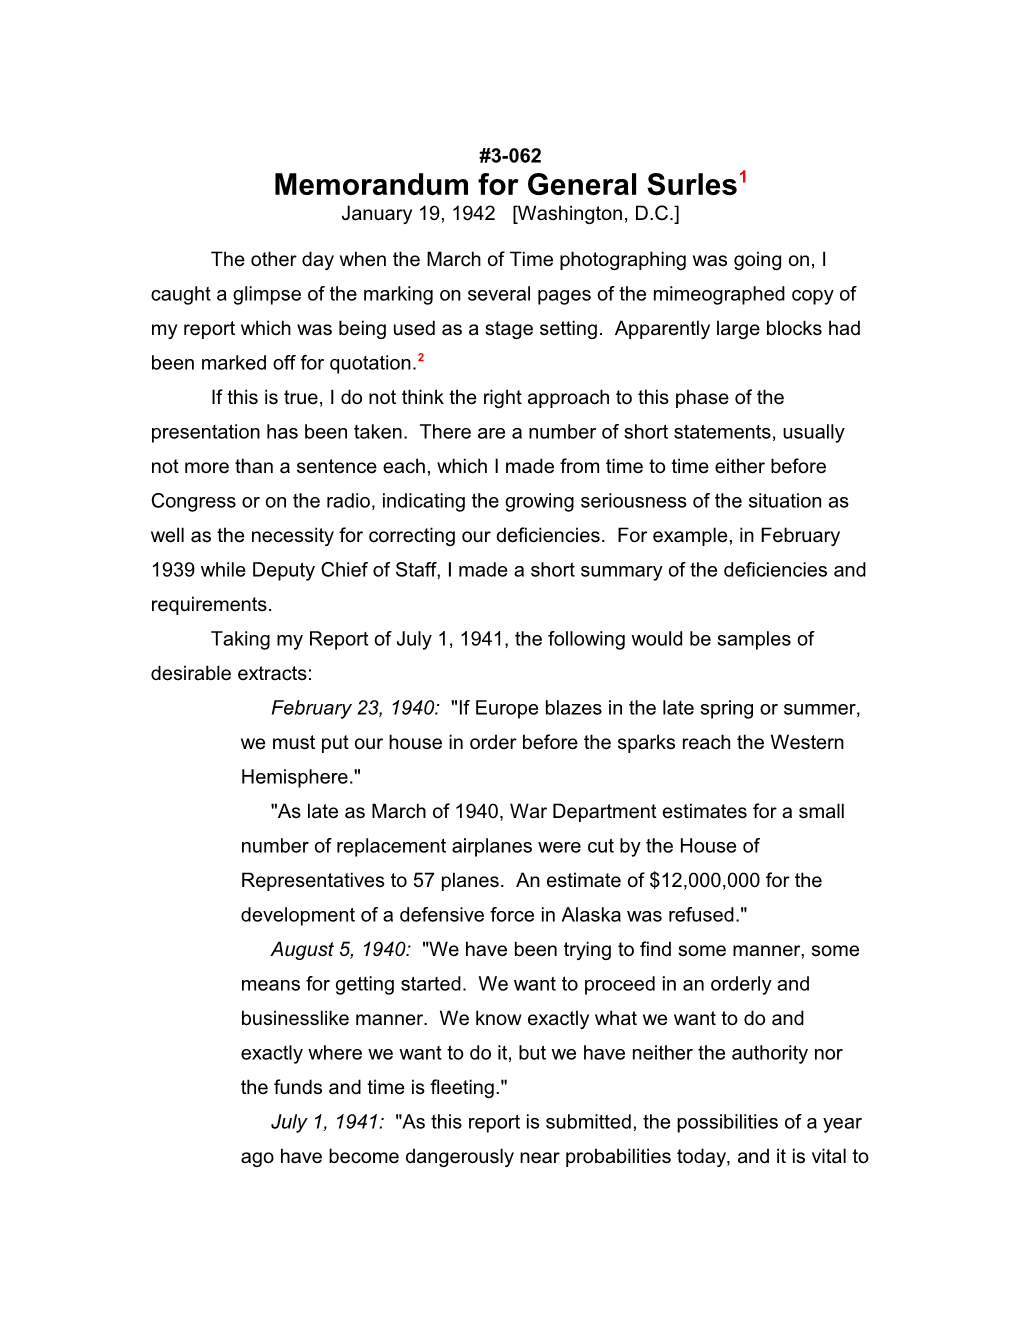 Memorandum for General Surles1